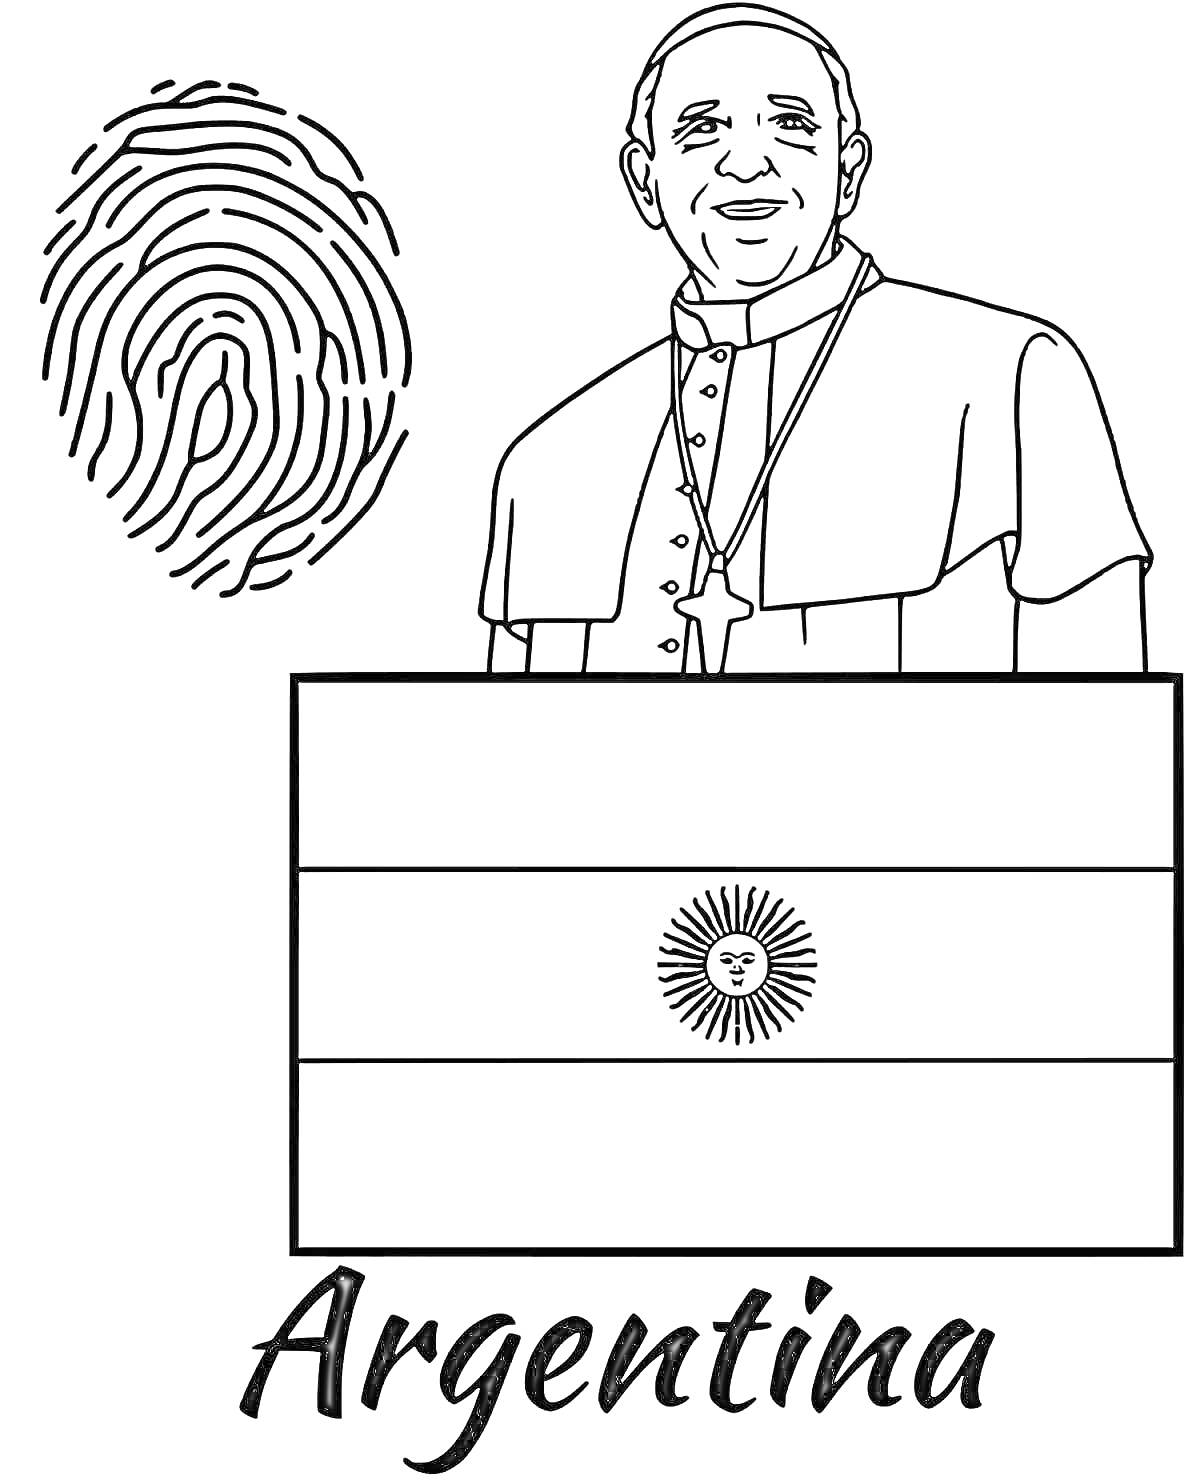 Раскраска Аргентина с отпечатком пальца, флагом Аргентины и человеком в религиозной одежде